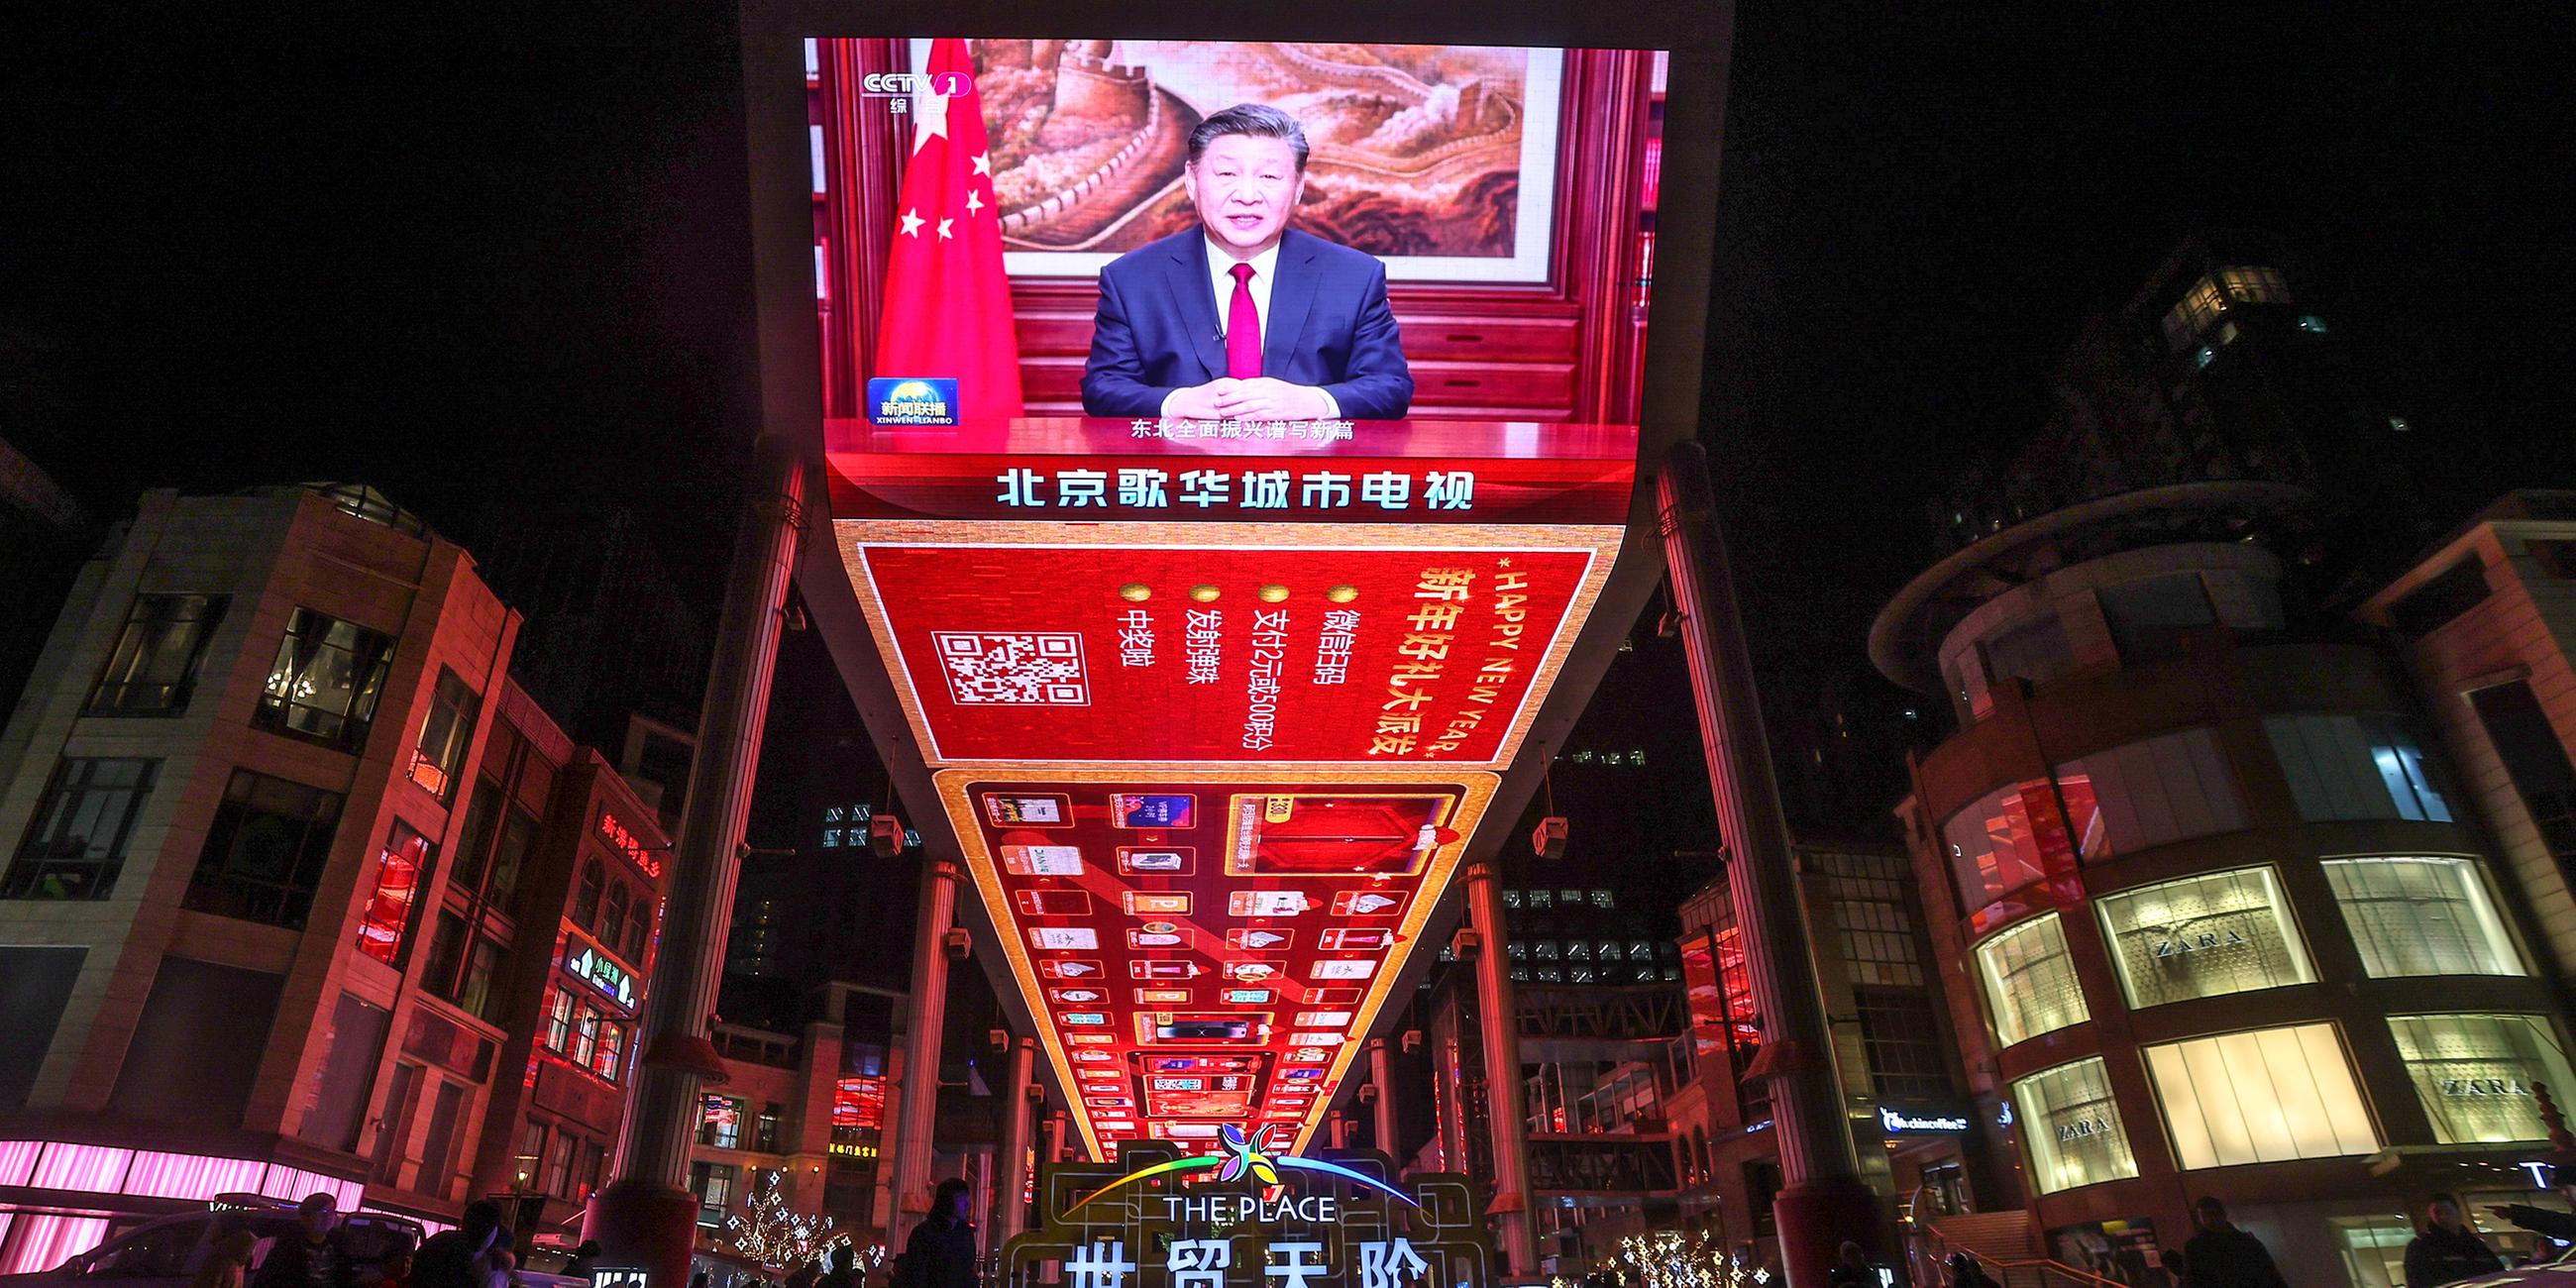 Xi Jinping hält Neujahrsansprache